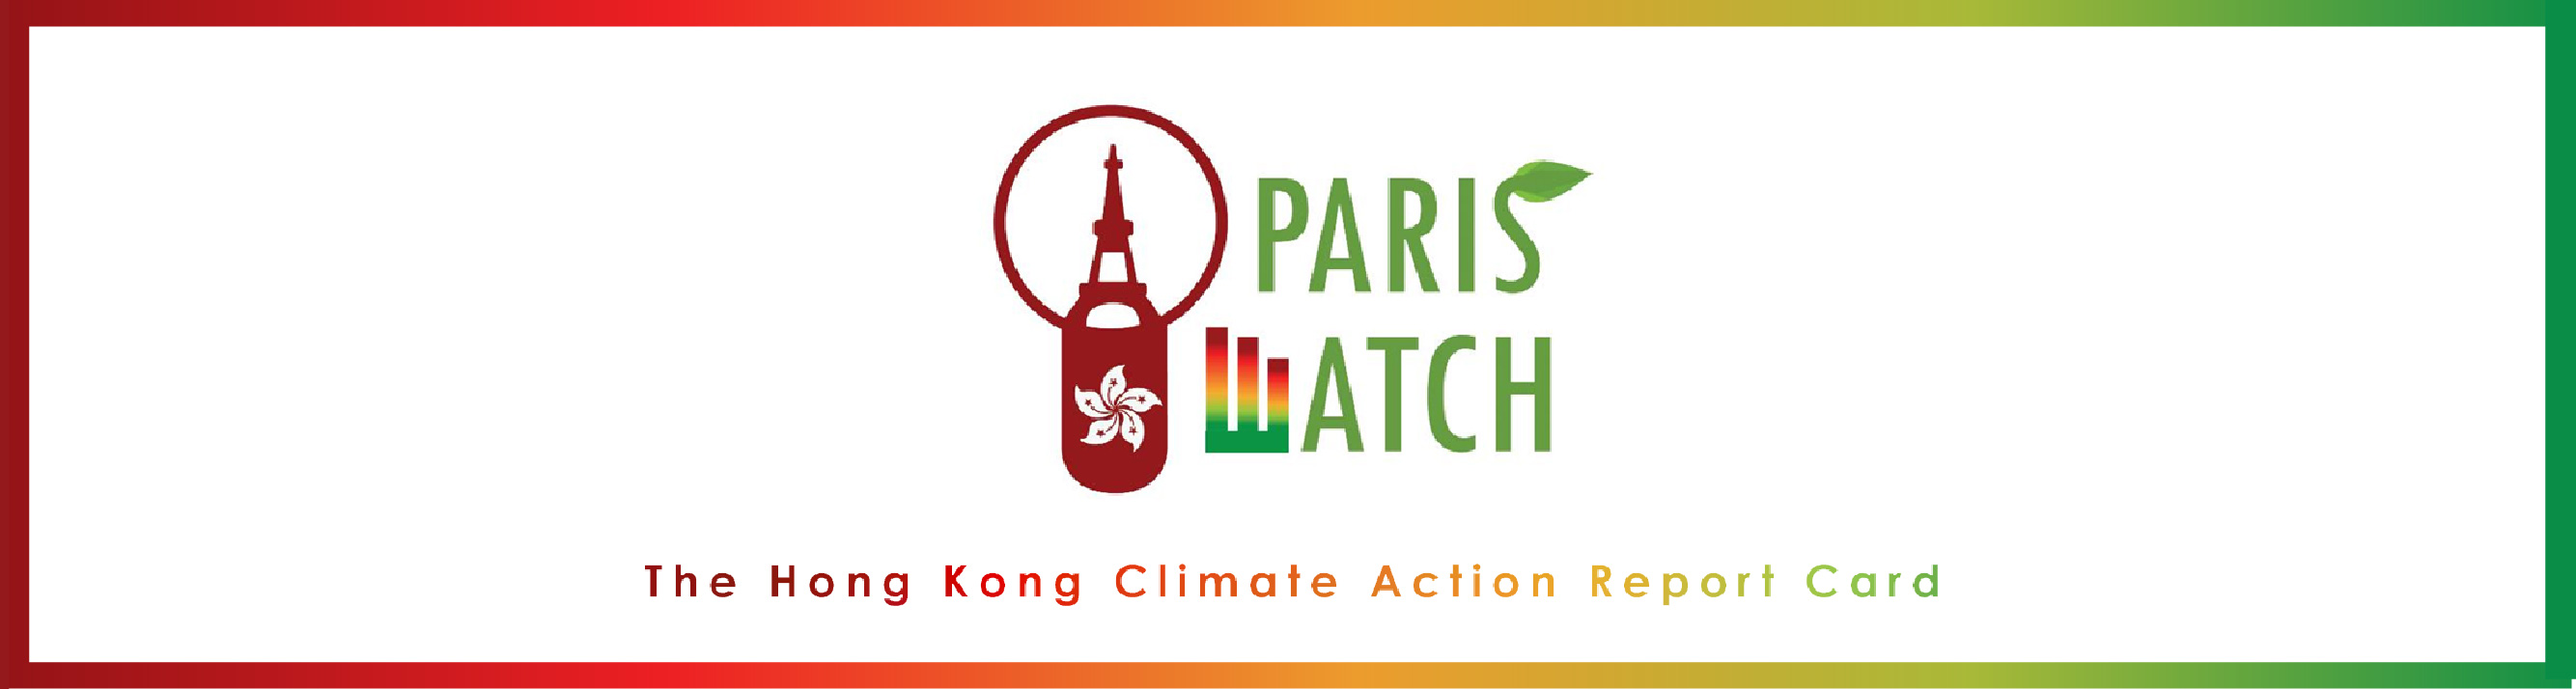 巴黎氣候協議減碳監察 查看香港氣候成績表 - 低碳想創坊 Top Banner